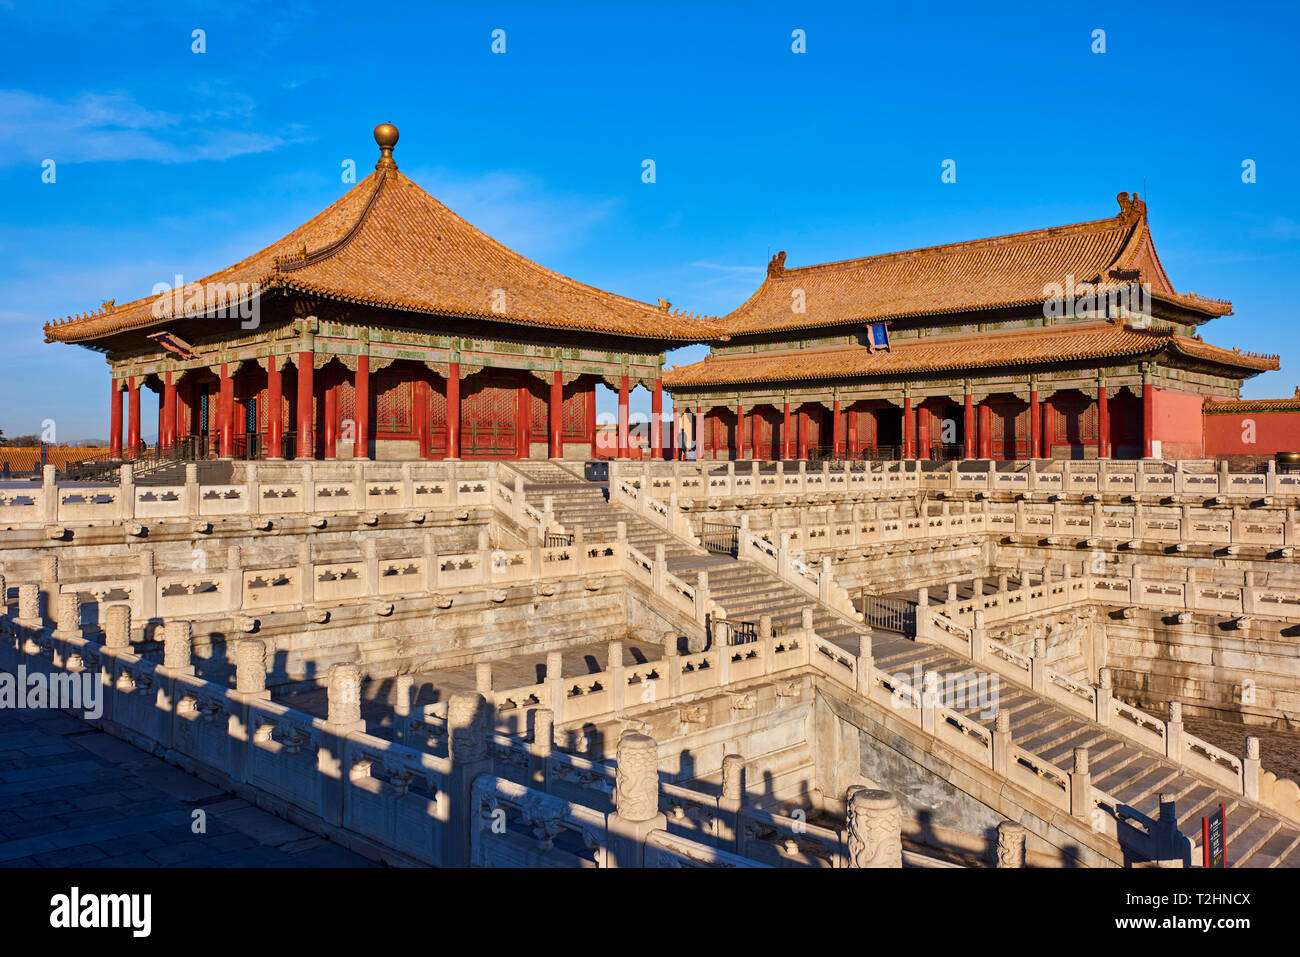 Halle zur Erhaltung der Harmonie (im Hintergrund) mit Hall von Zentralen Harmonie, Verbotene Stadt, Beijing, China, Ostasien Stockfoto